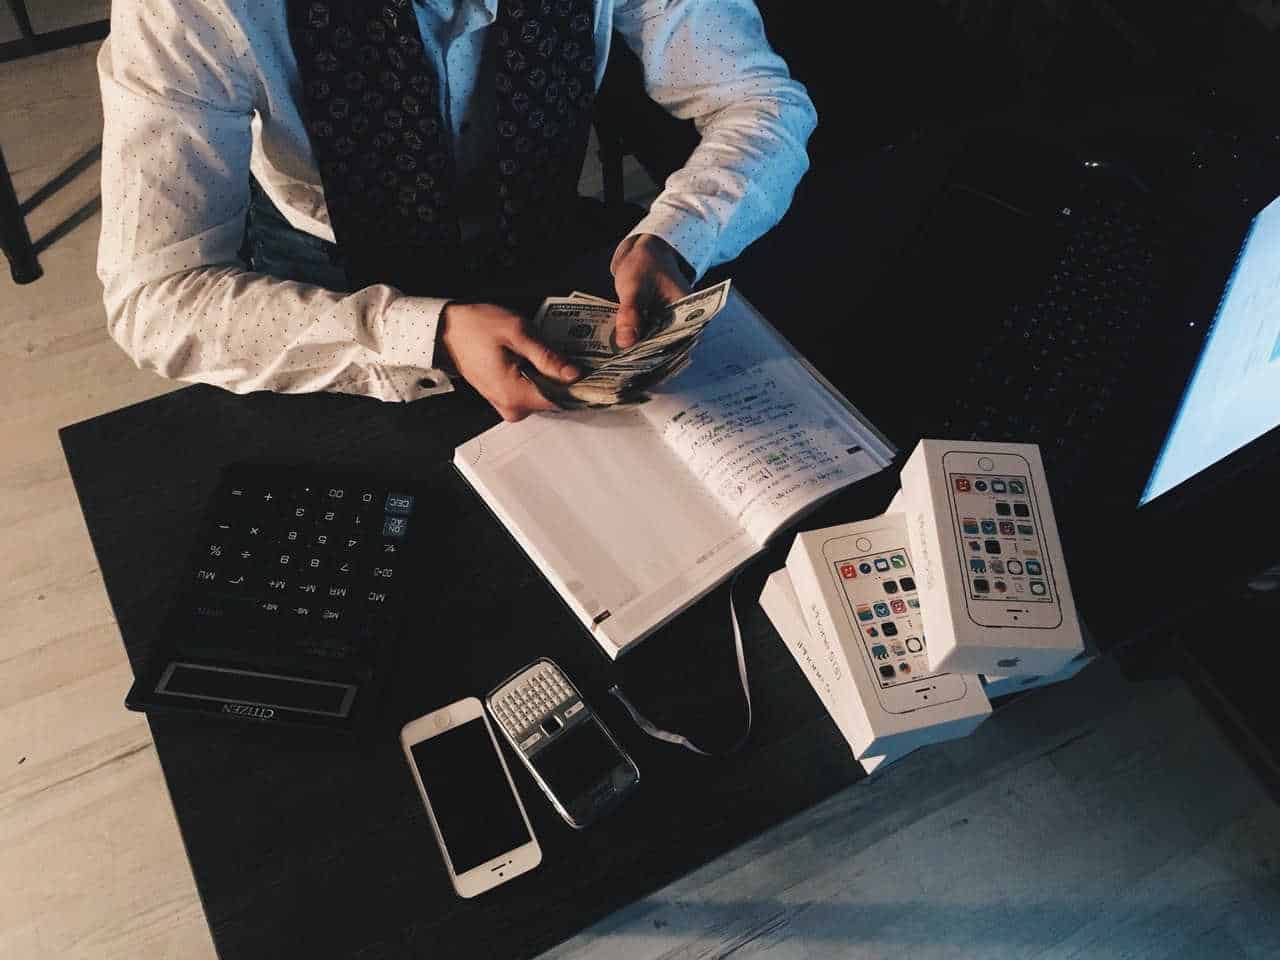 Comment enregistrer un emprunt bancaire en comptabilité ?